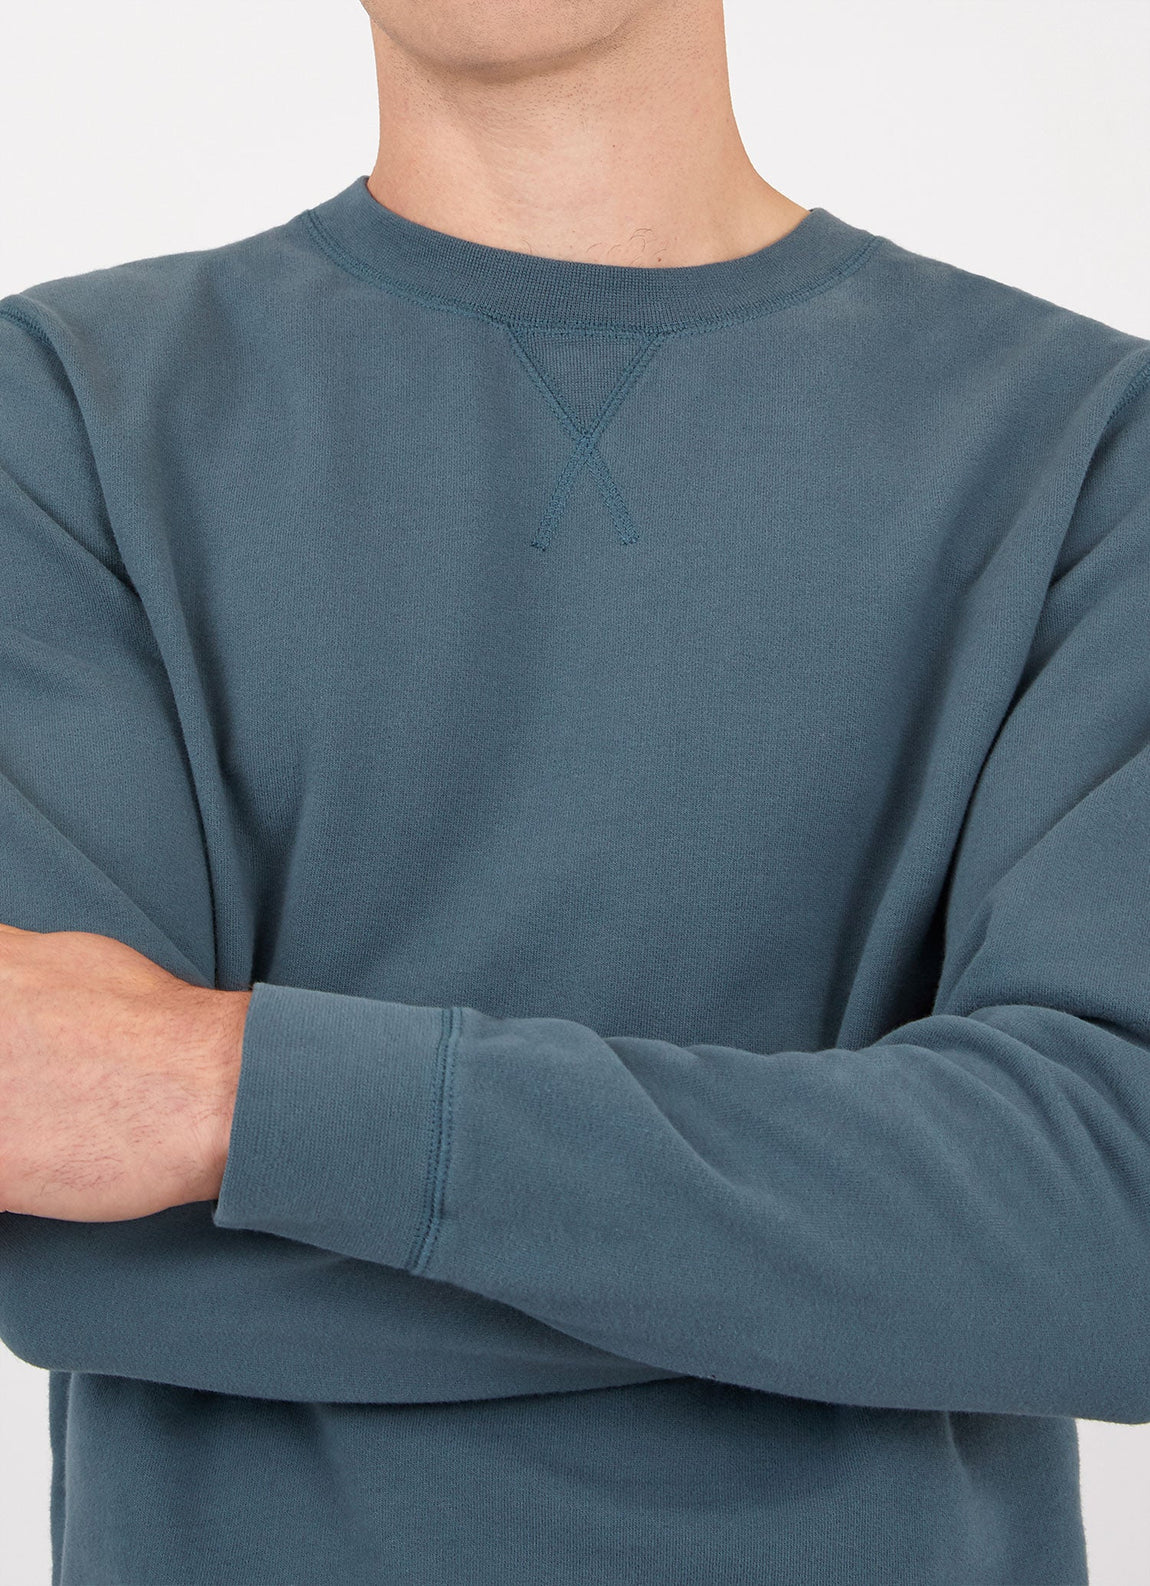 Men's Loopback Sweatshirt in Dark Petrol